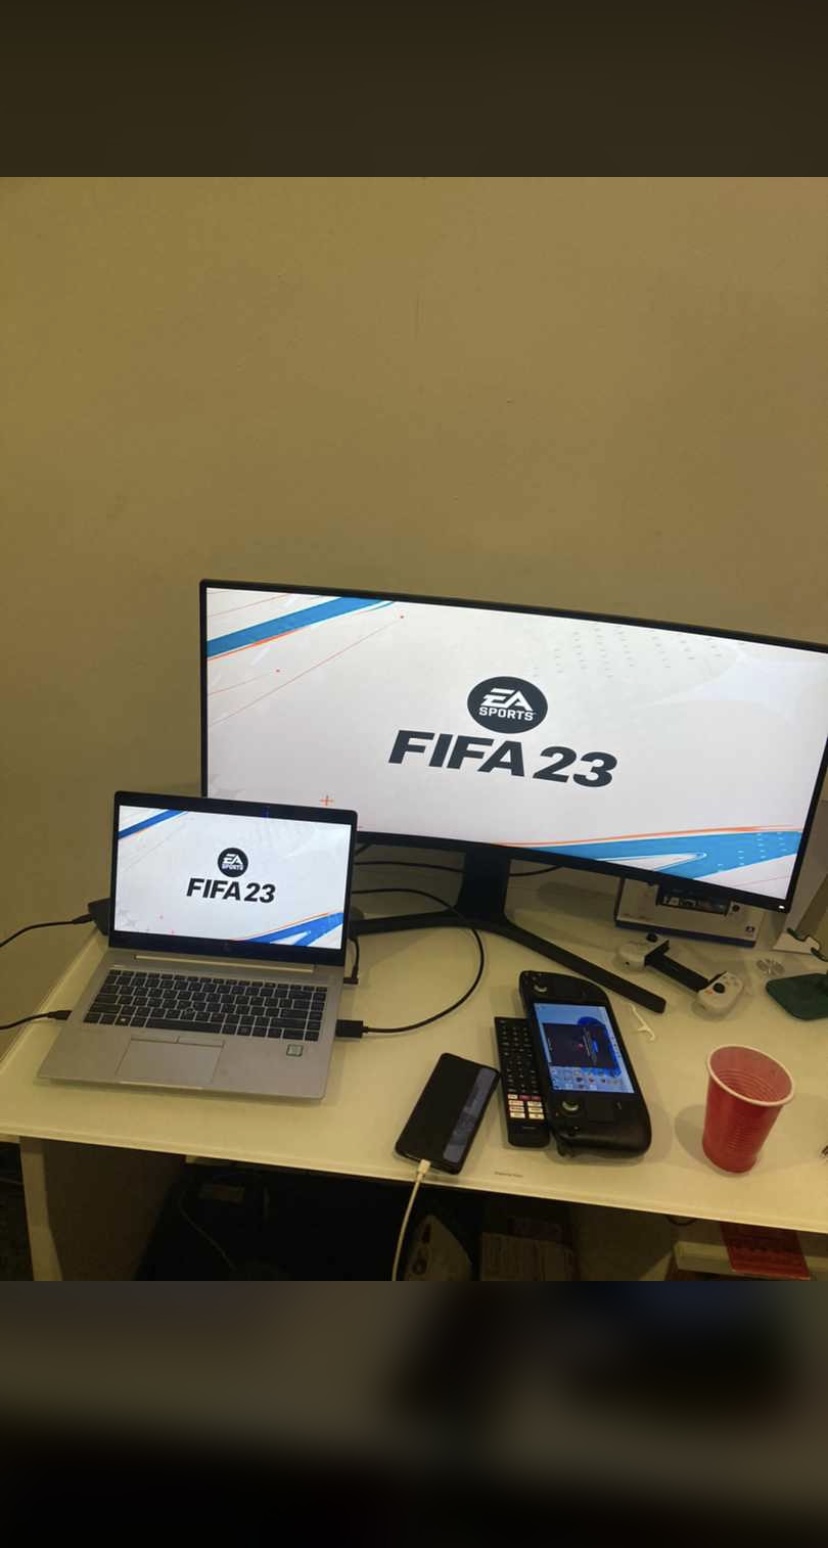 FIFA 23 On Steam Deck